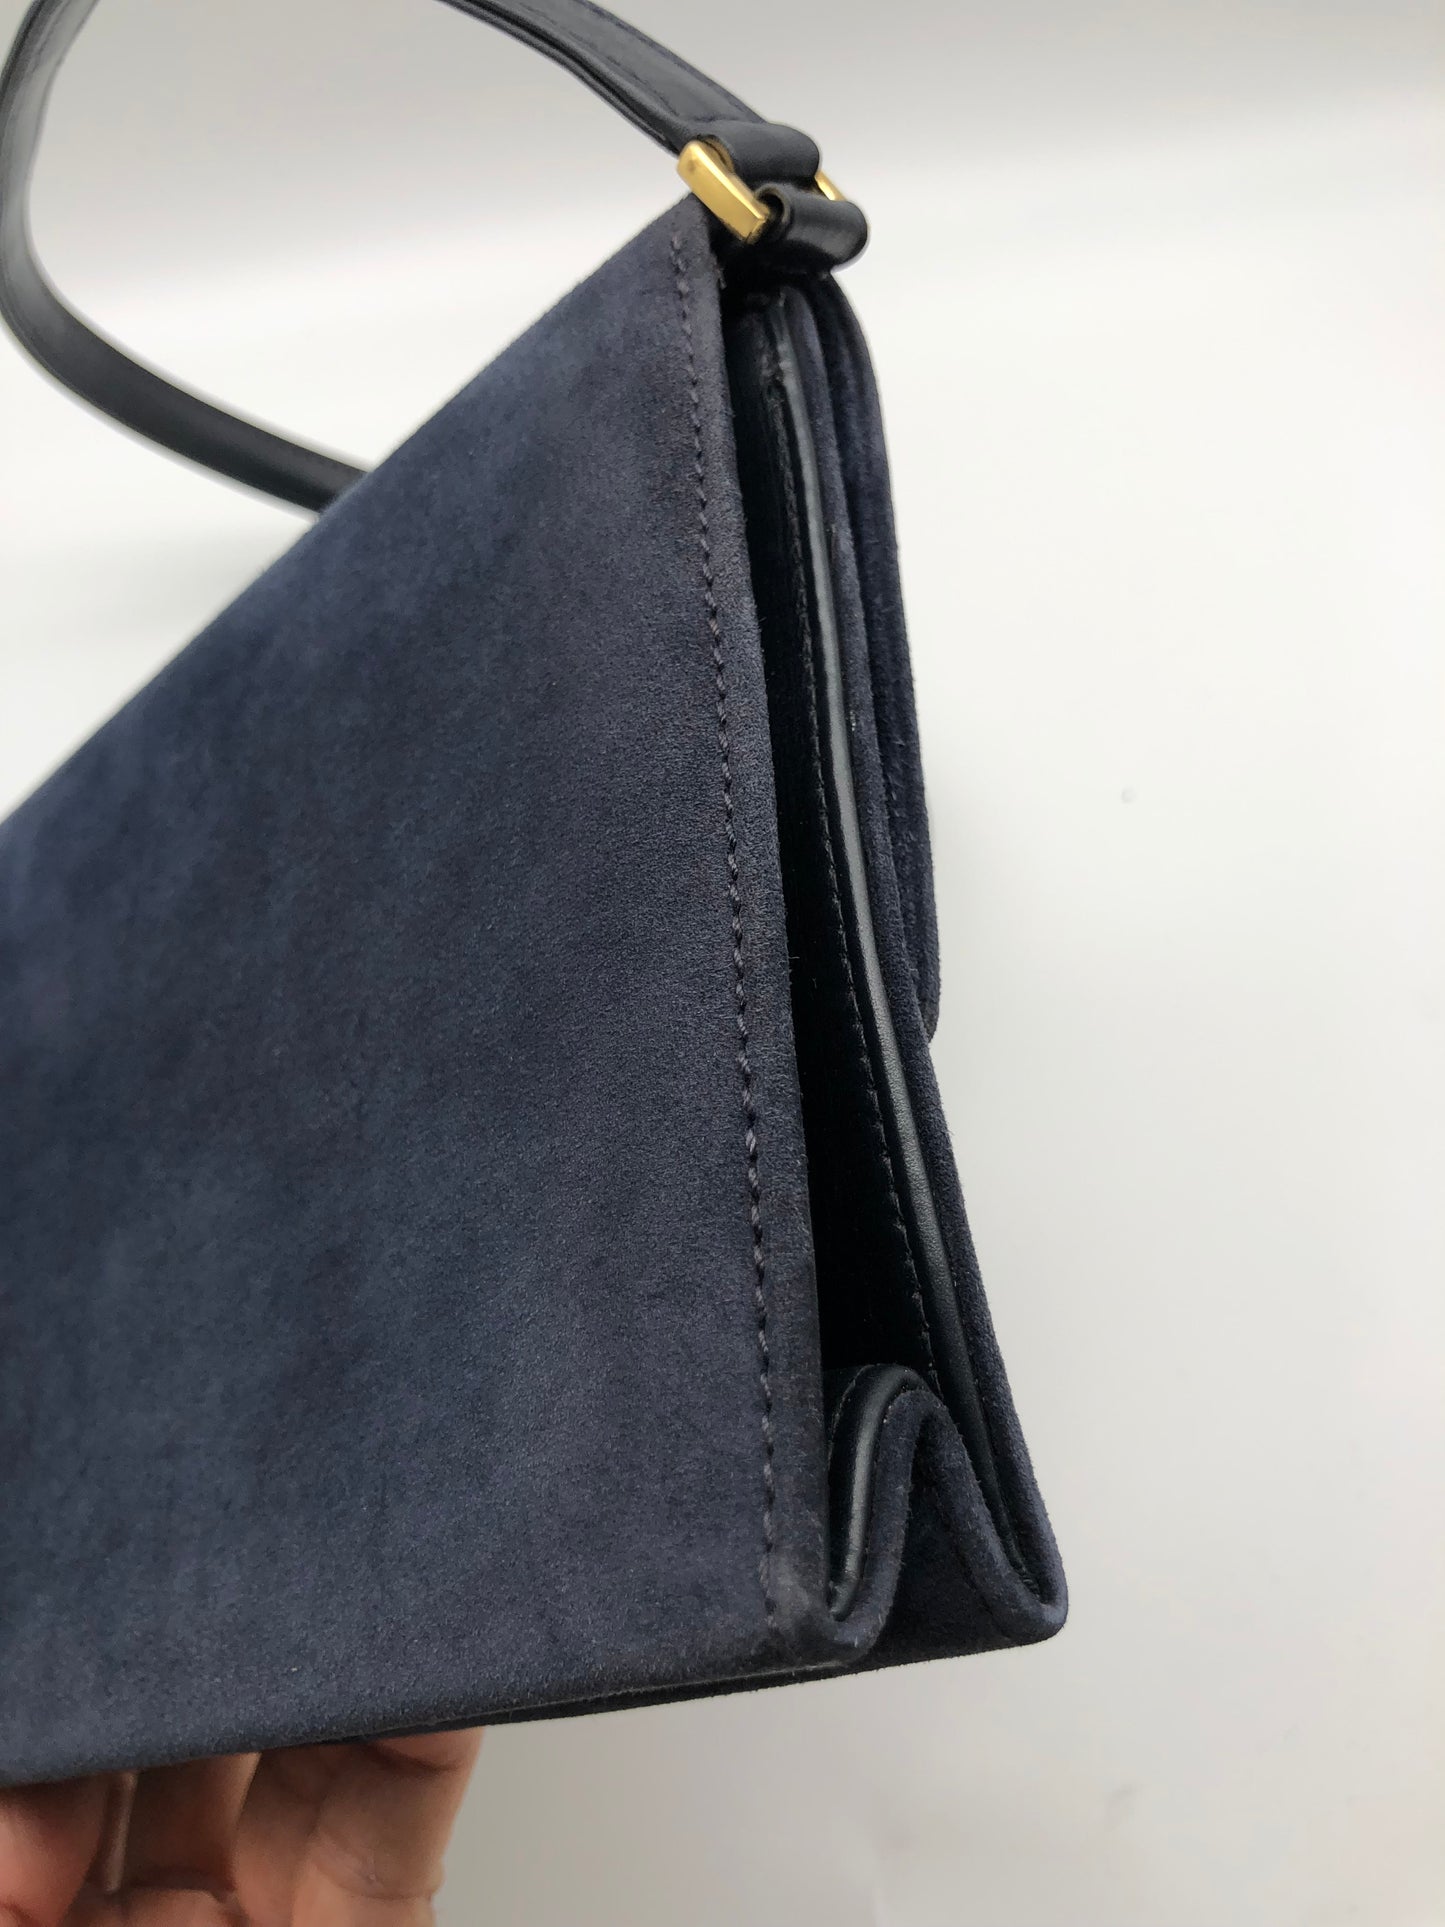 Authentic Gucci Vintage 1970s Navy Blue Suede Clutch Shoulder Bag